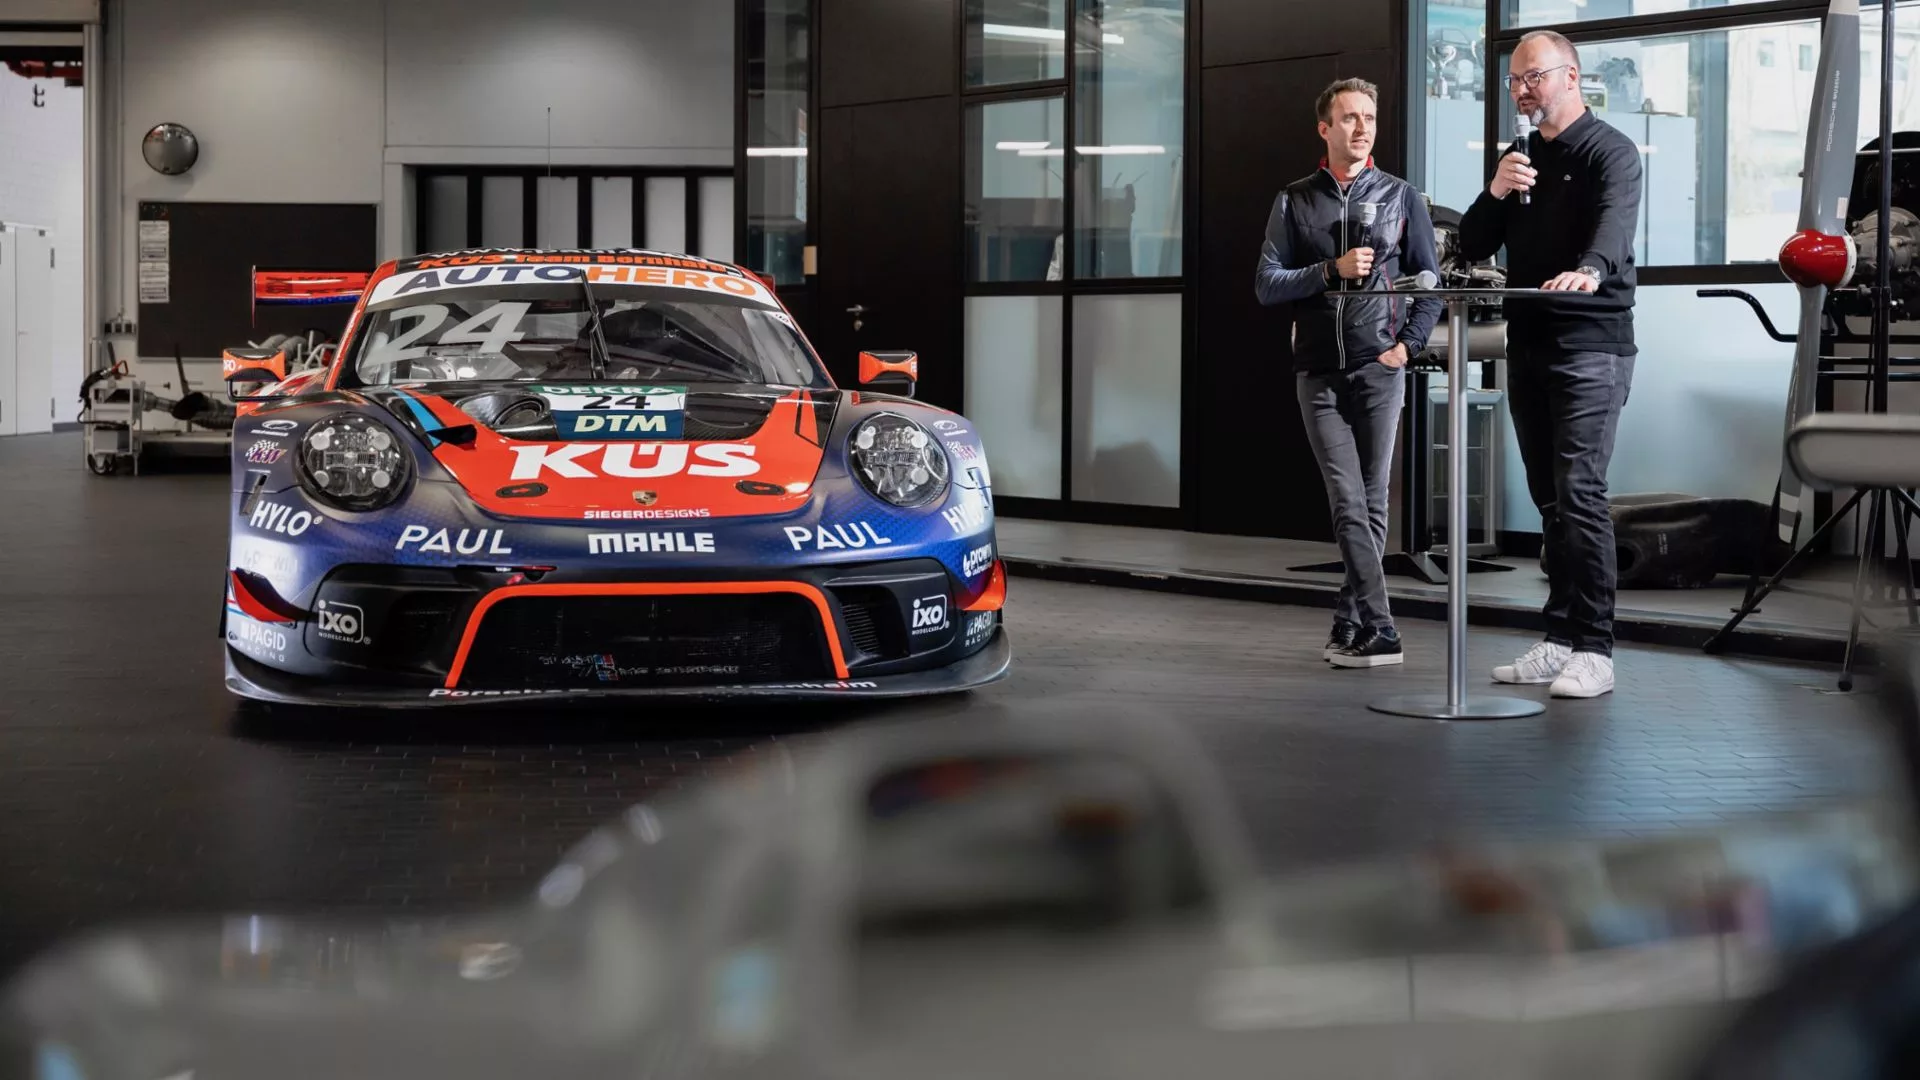 La première Porsche victorieuse en DTM entre au musée de la marque